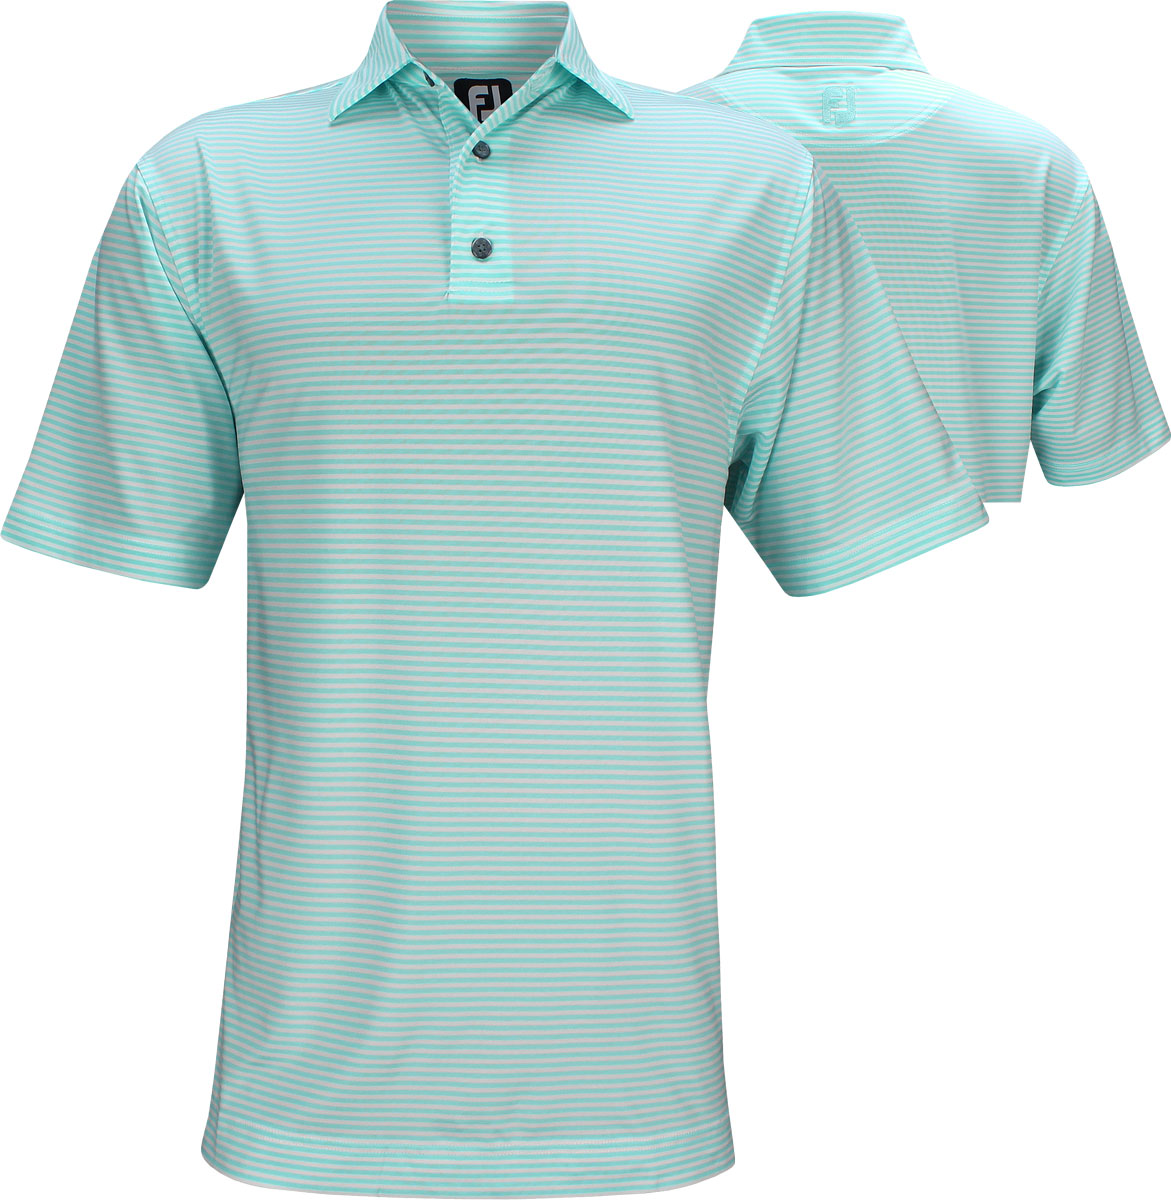 FootJoy Stretch Lisle Feeder Stripe Golf Shirts